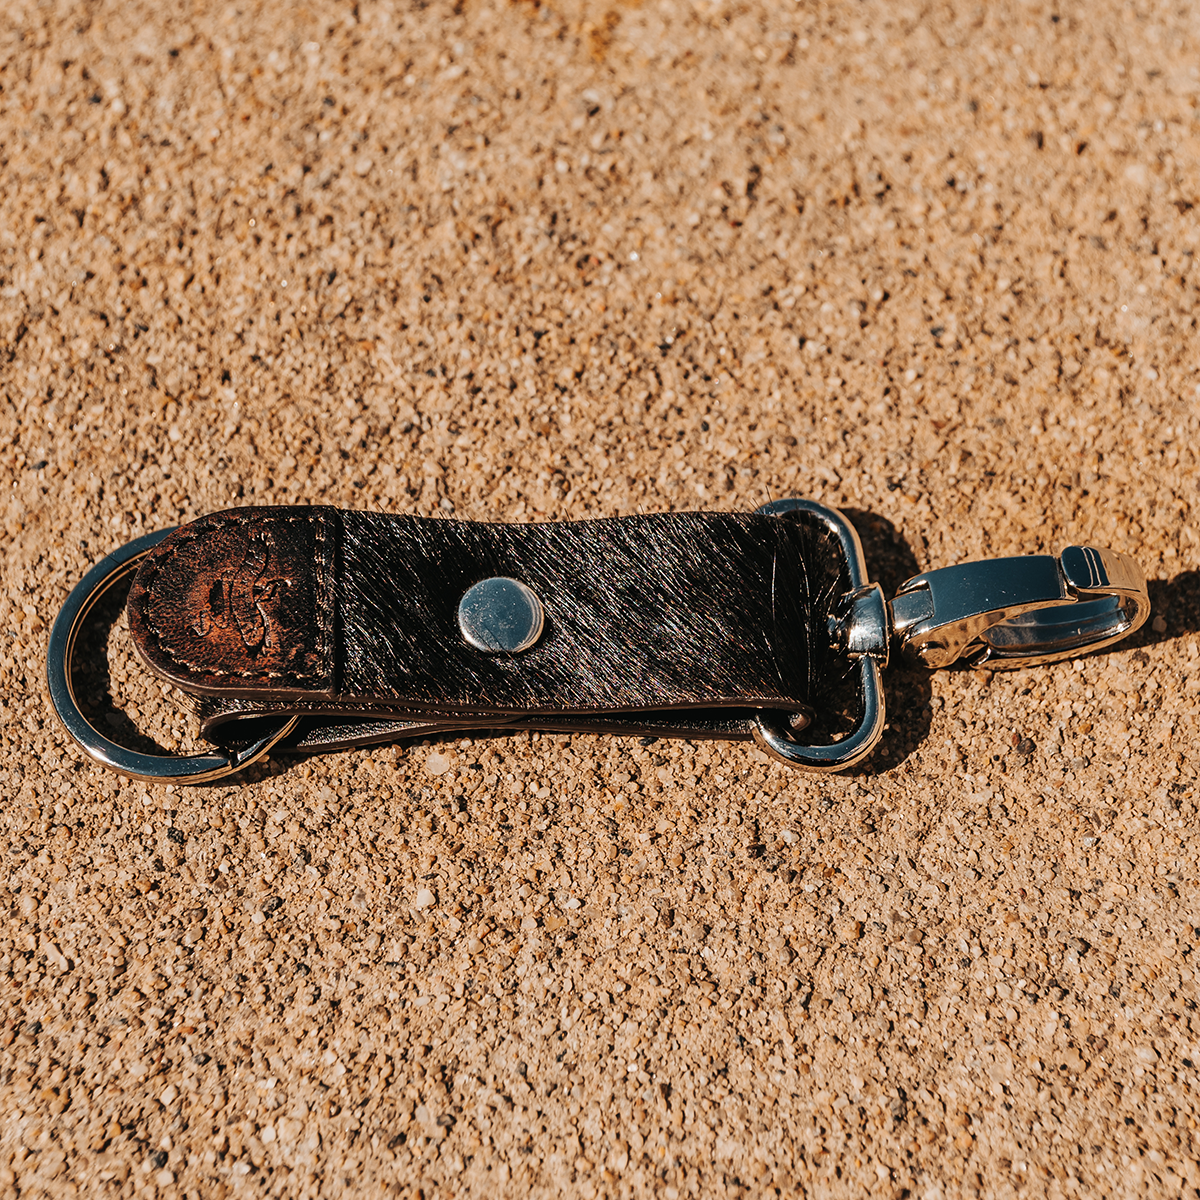 FREEBIRD Keychain black featuring silver hardware